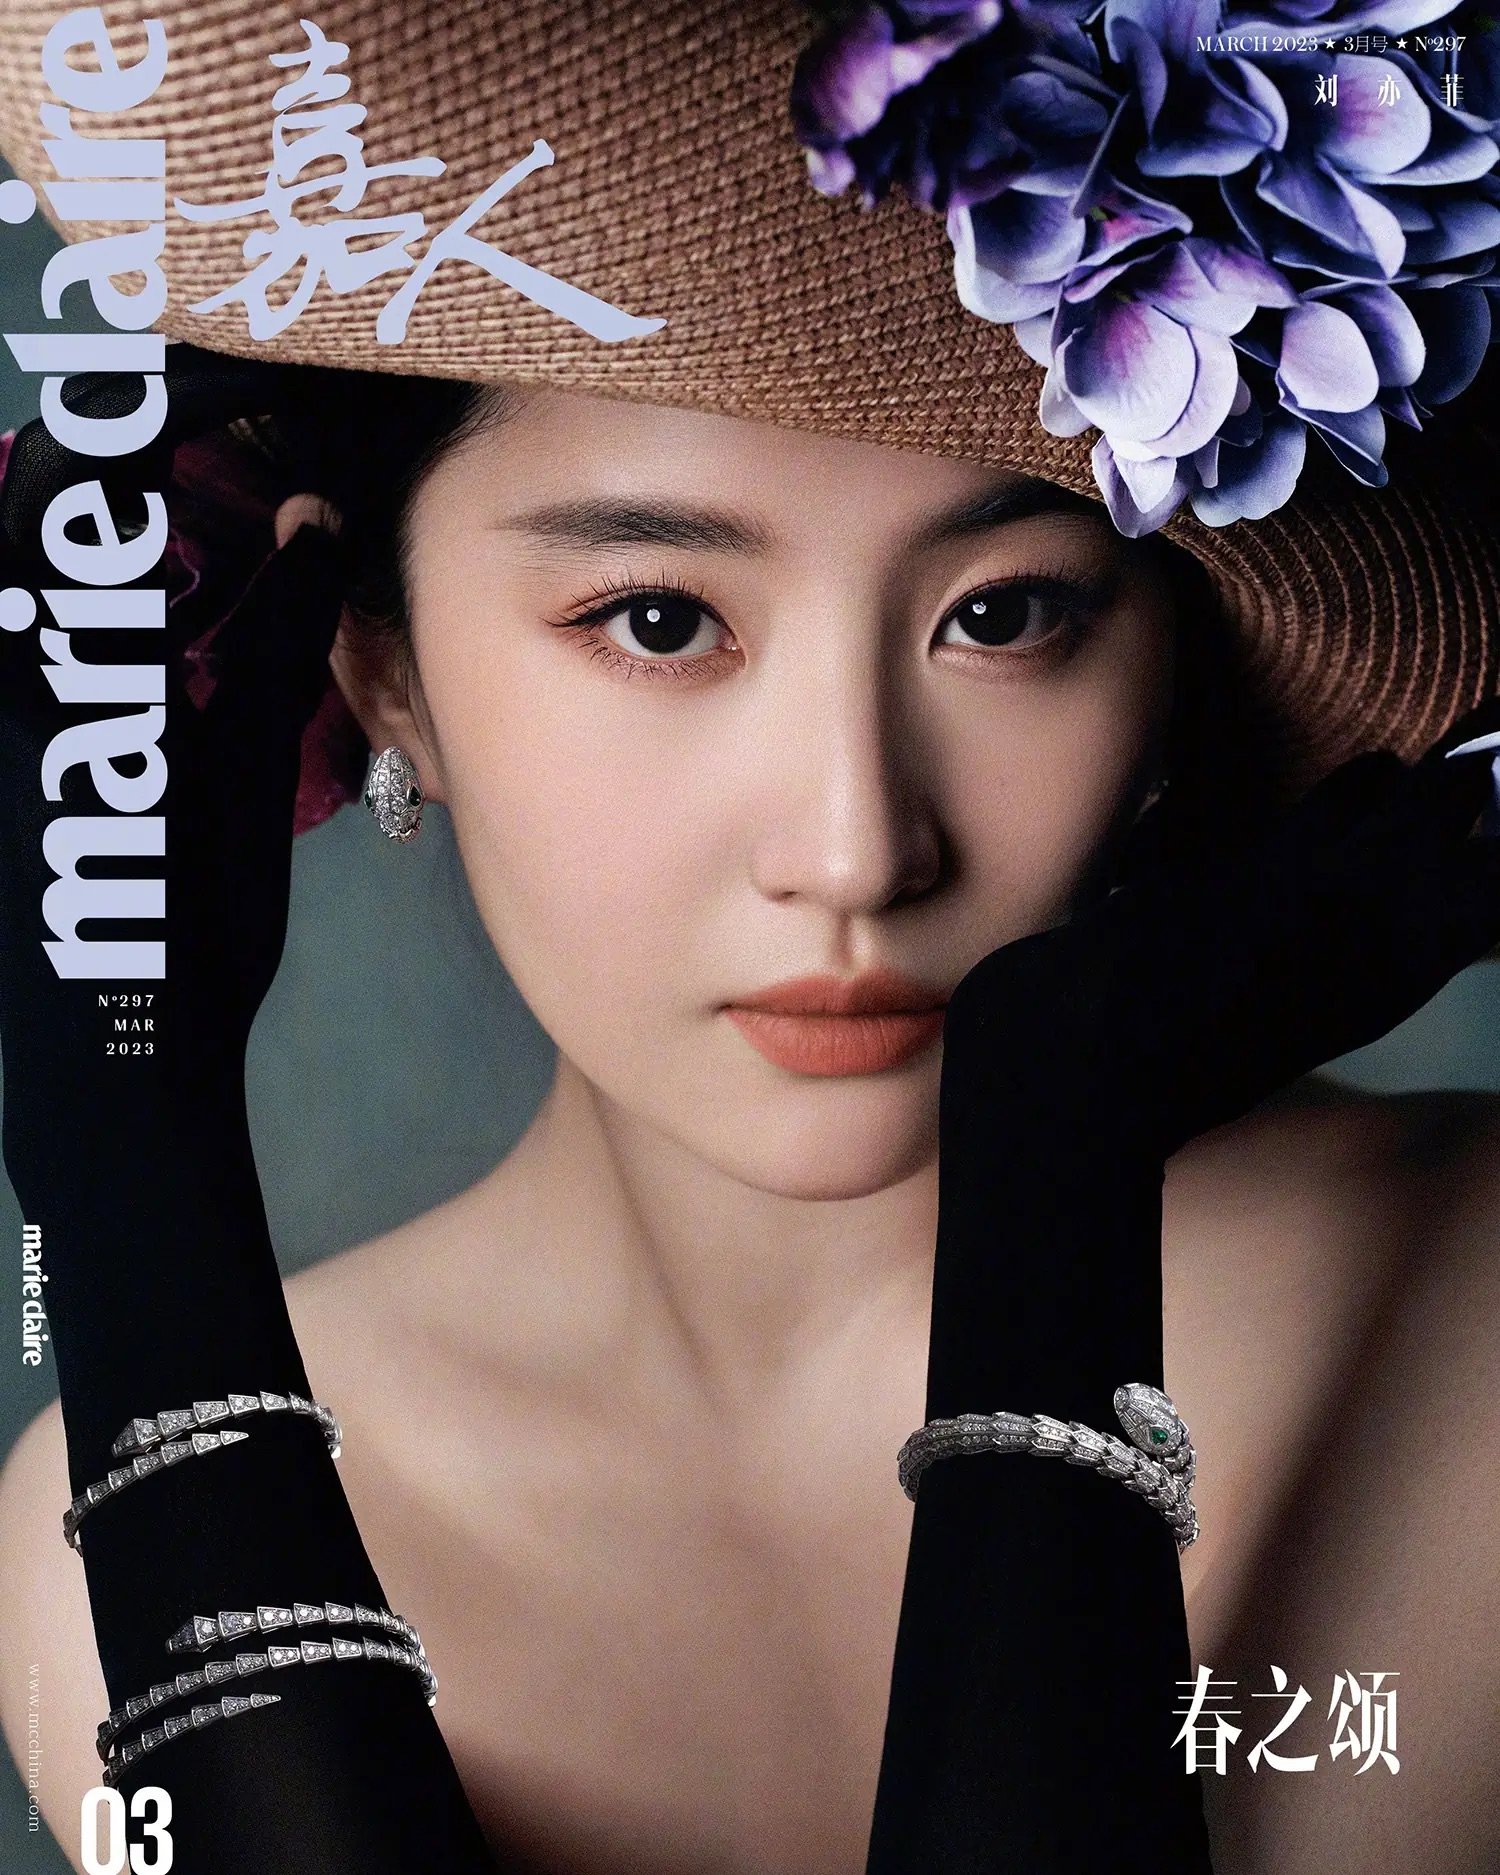 Liu-Yifei-covers-Marie-Claire-China-March-2023-by-Ziqian-Wang-3.jpeg